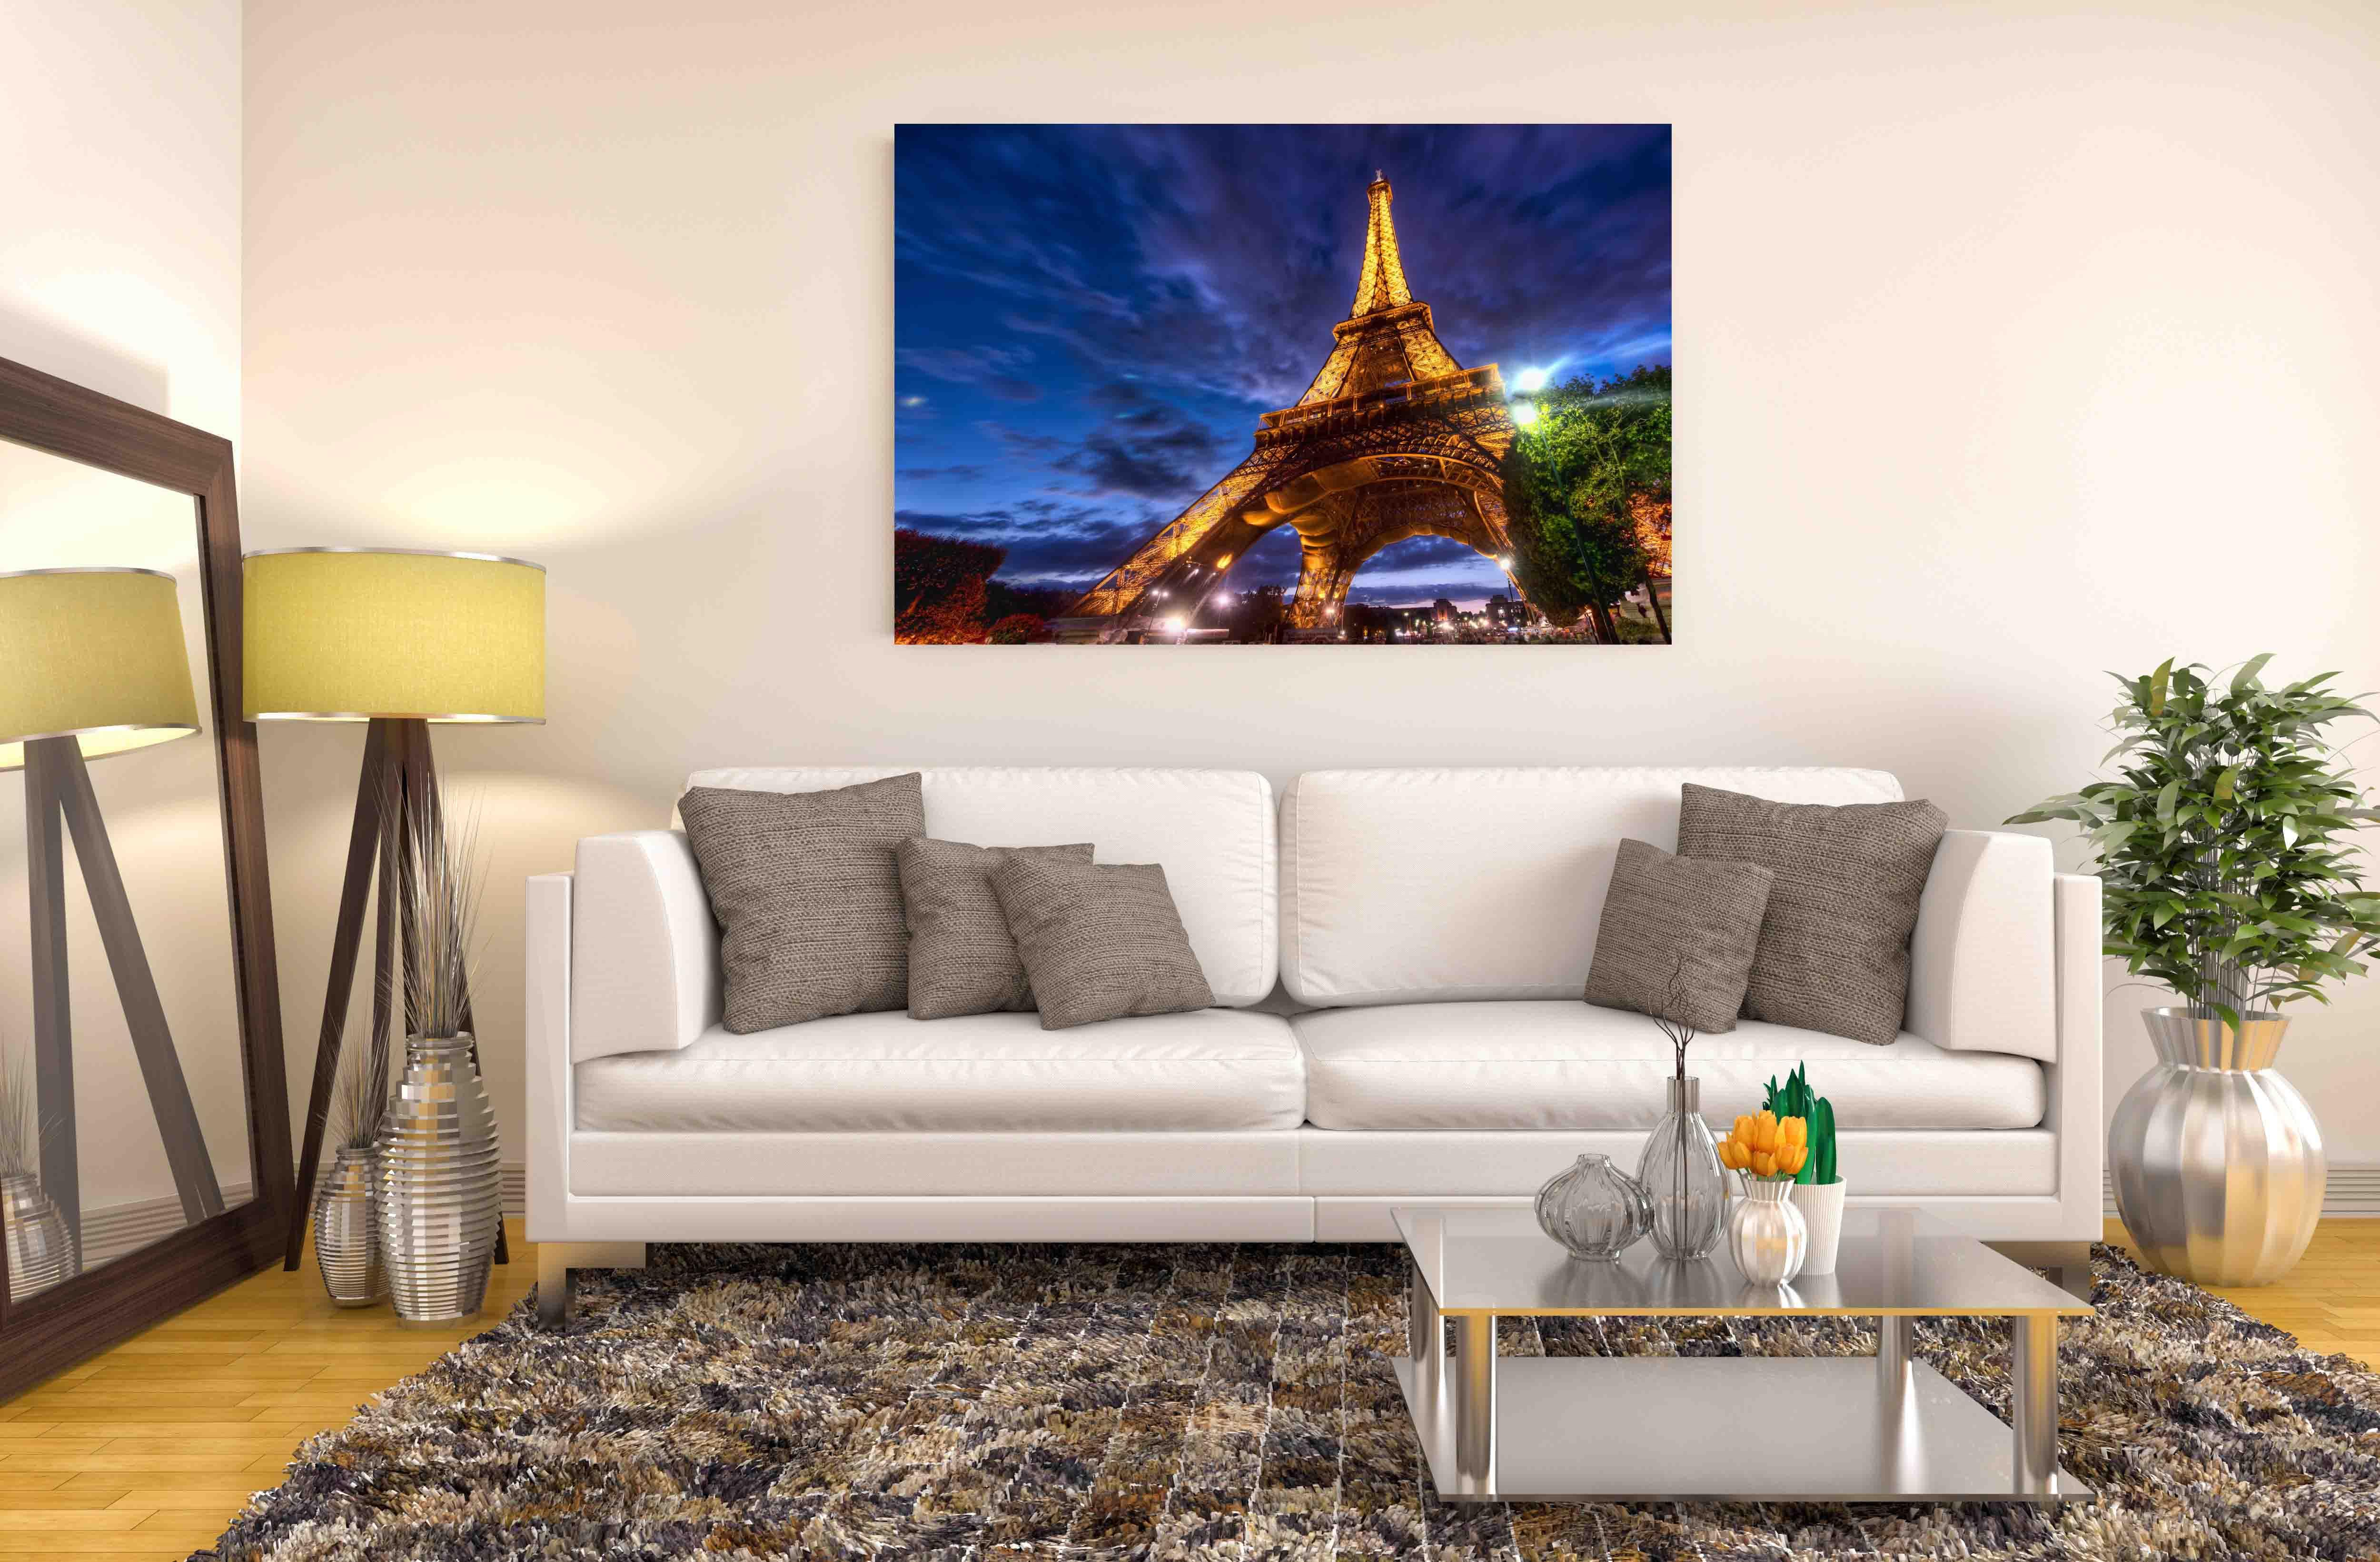 Nuotrauka – Eifelio bokštas Paryžiuje